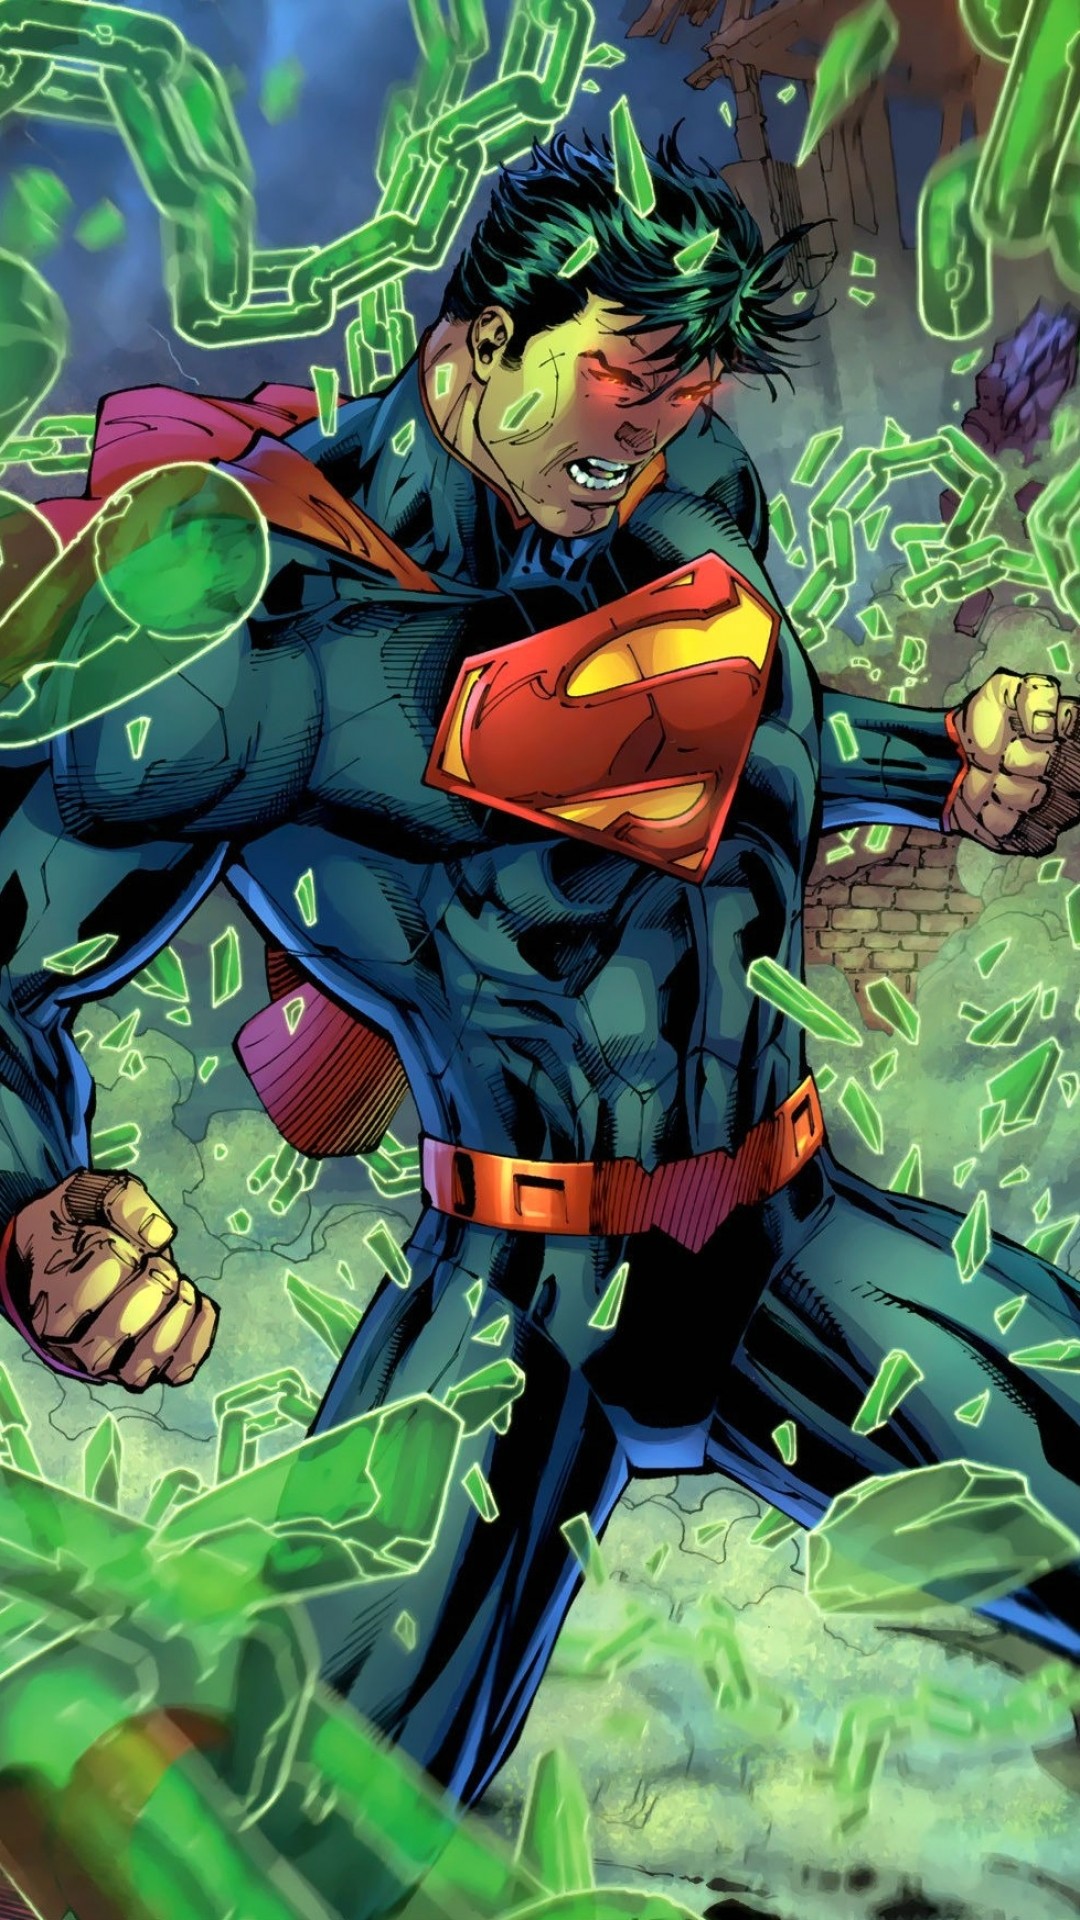 スーパーマンコミック壁紙,架空の人物,スーパーヒーロー,ヒーロー,正義リーグ,フィクション